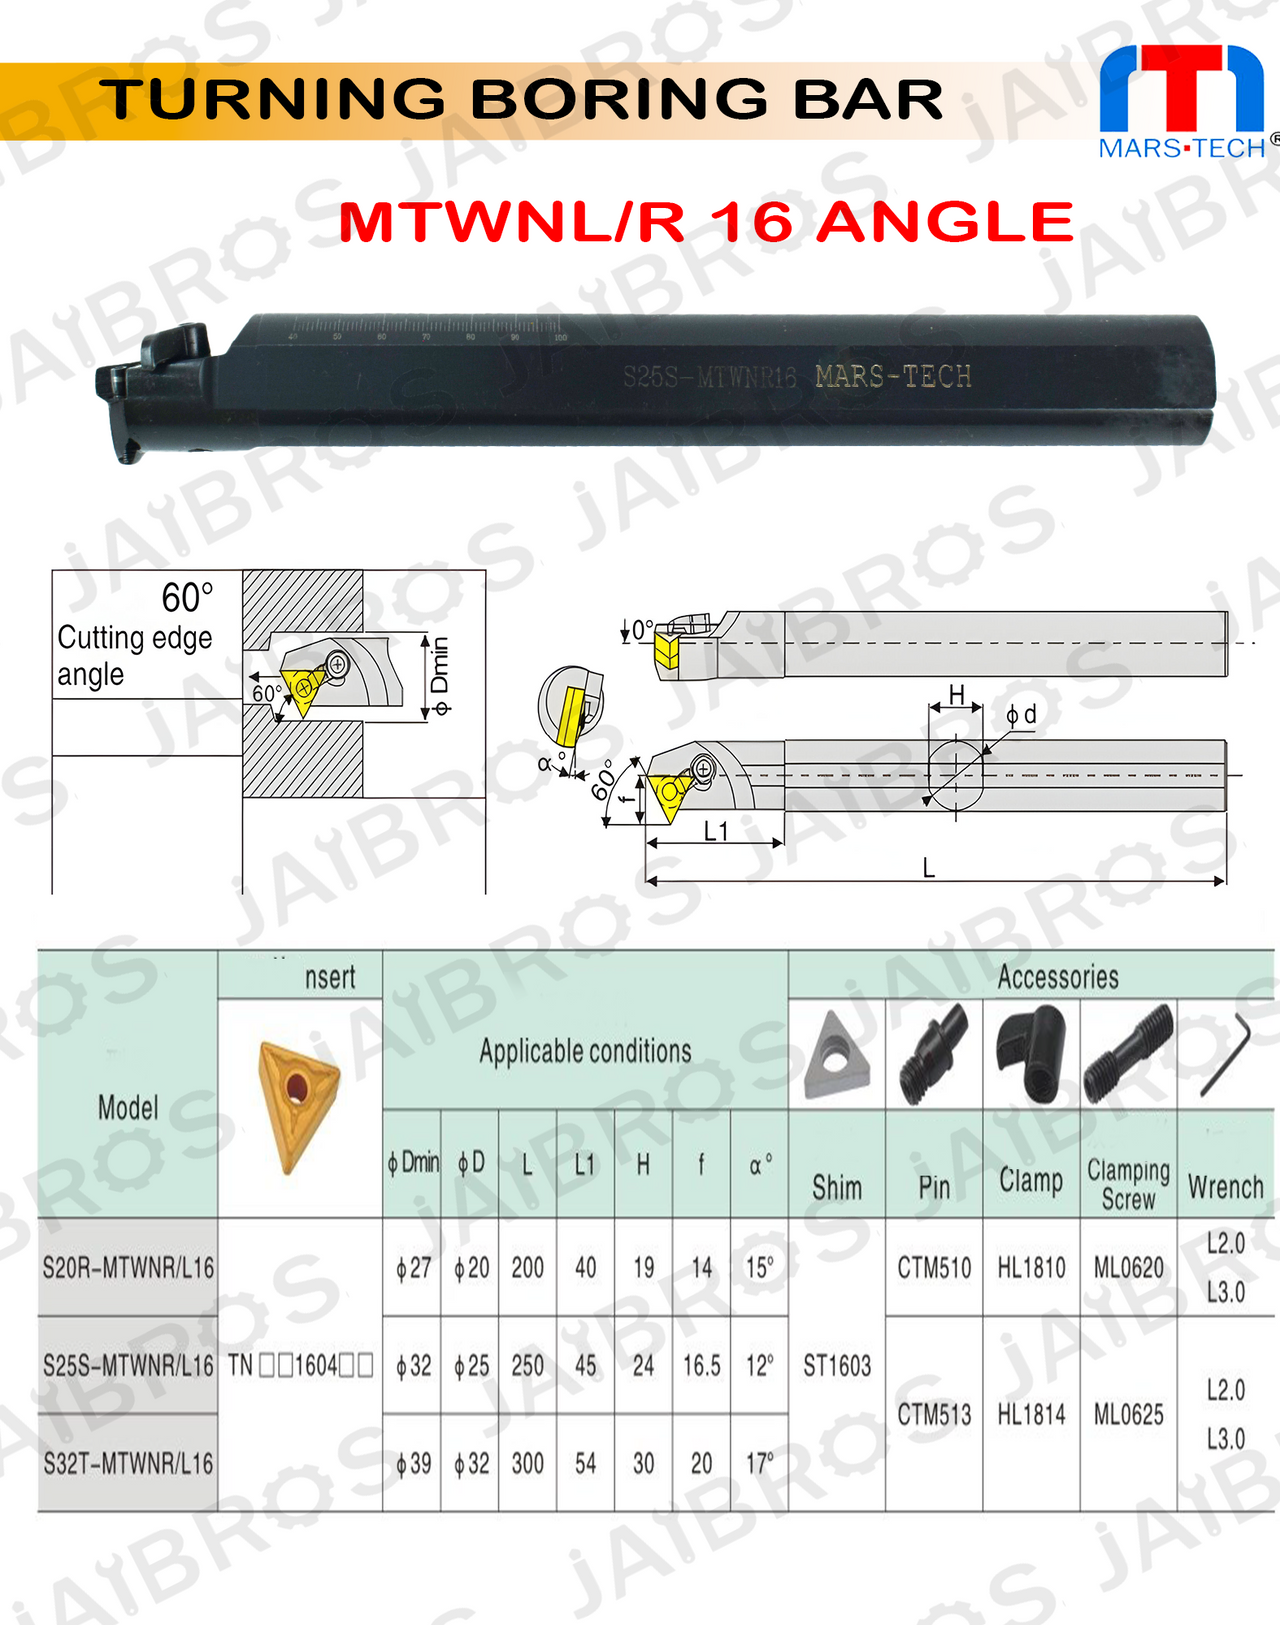 MTWNR 25 mm boring bar for tnmg160408 insert pack of 1